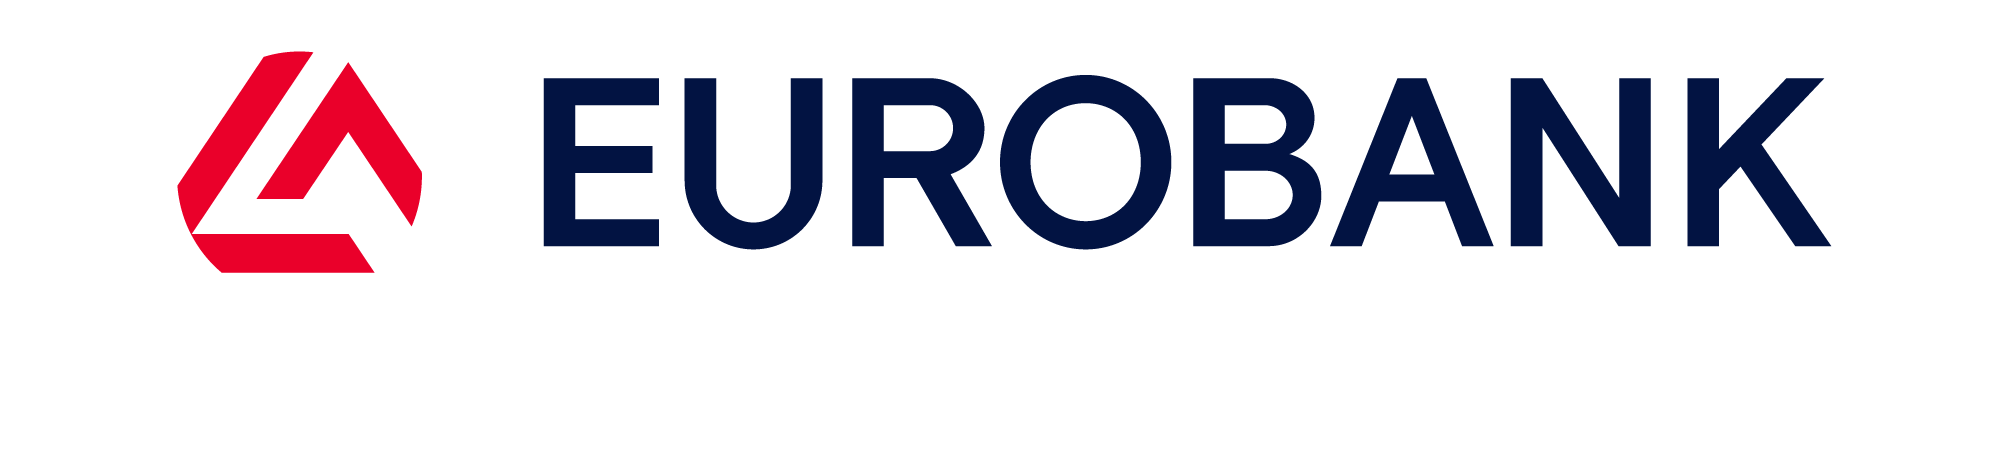 Eurobank_Bronze_logo (1)